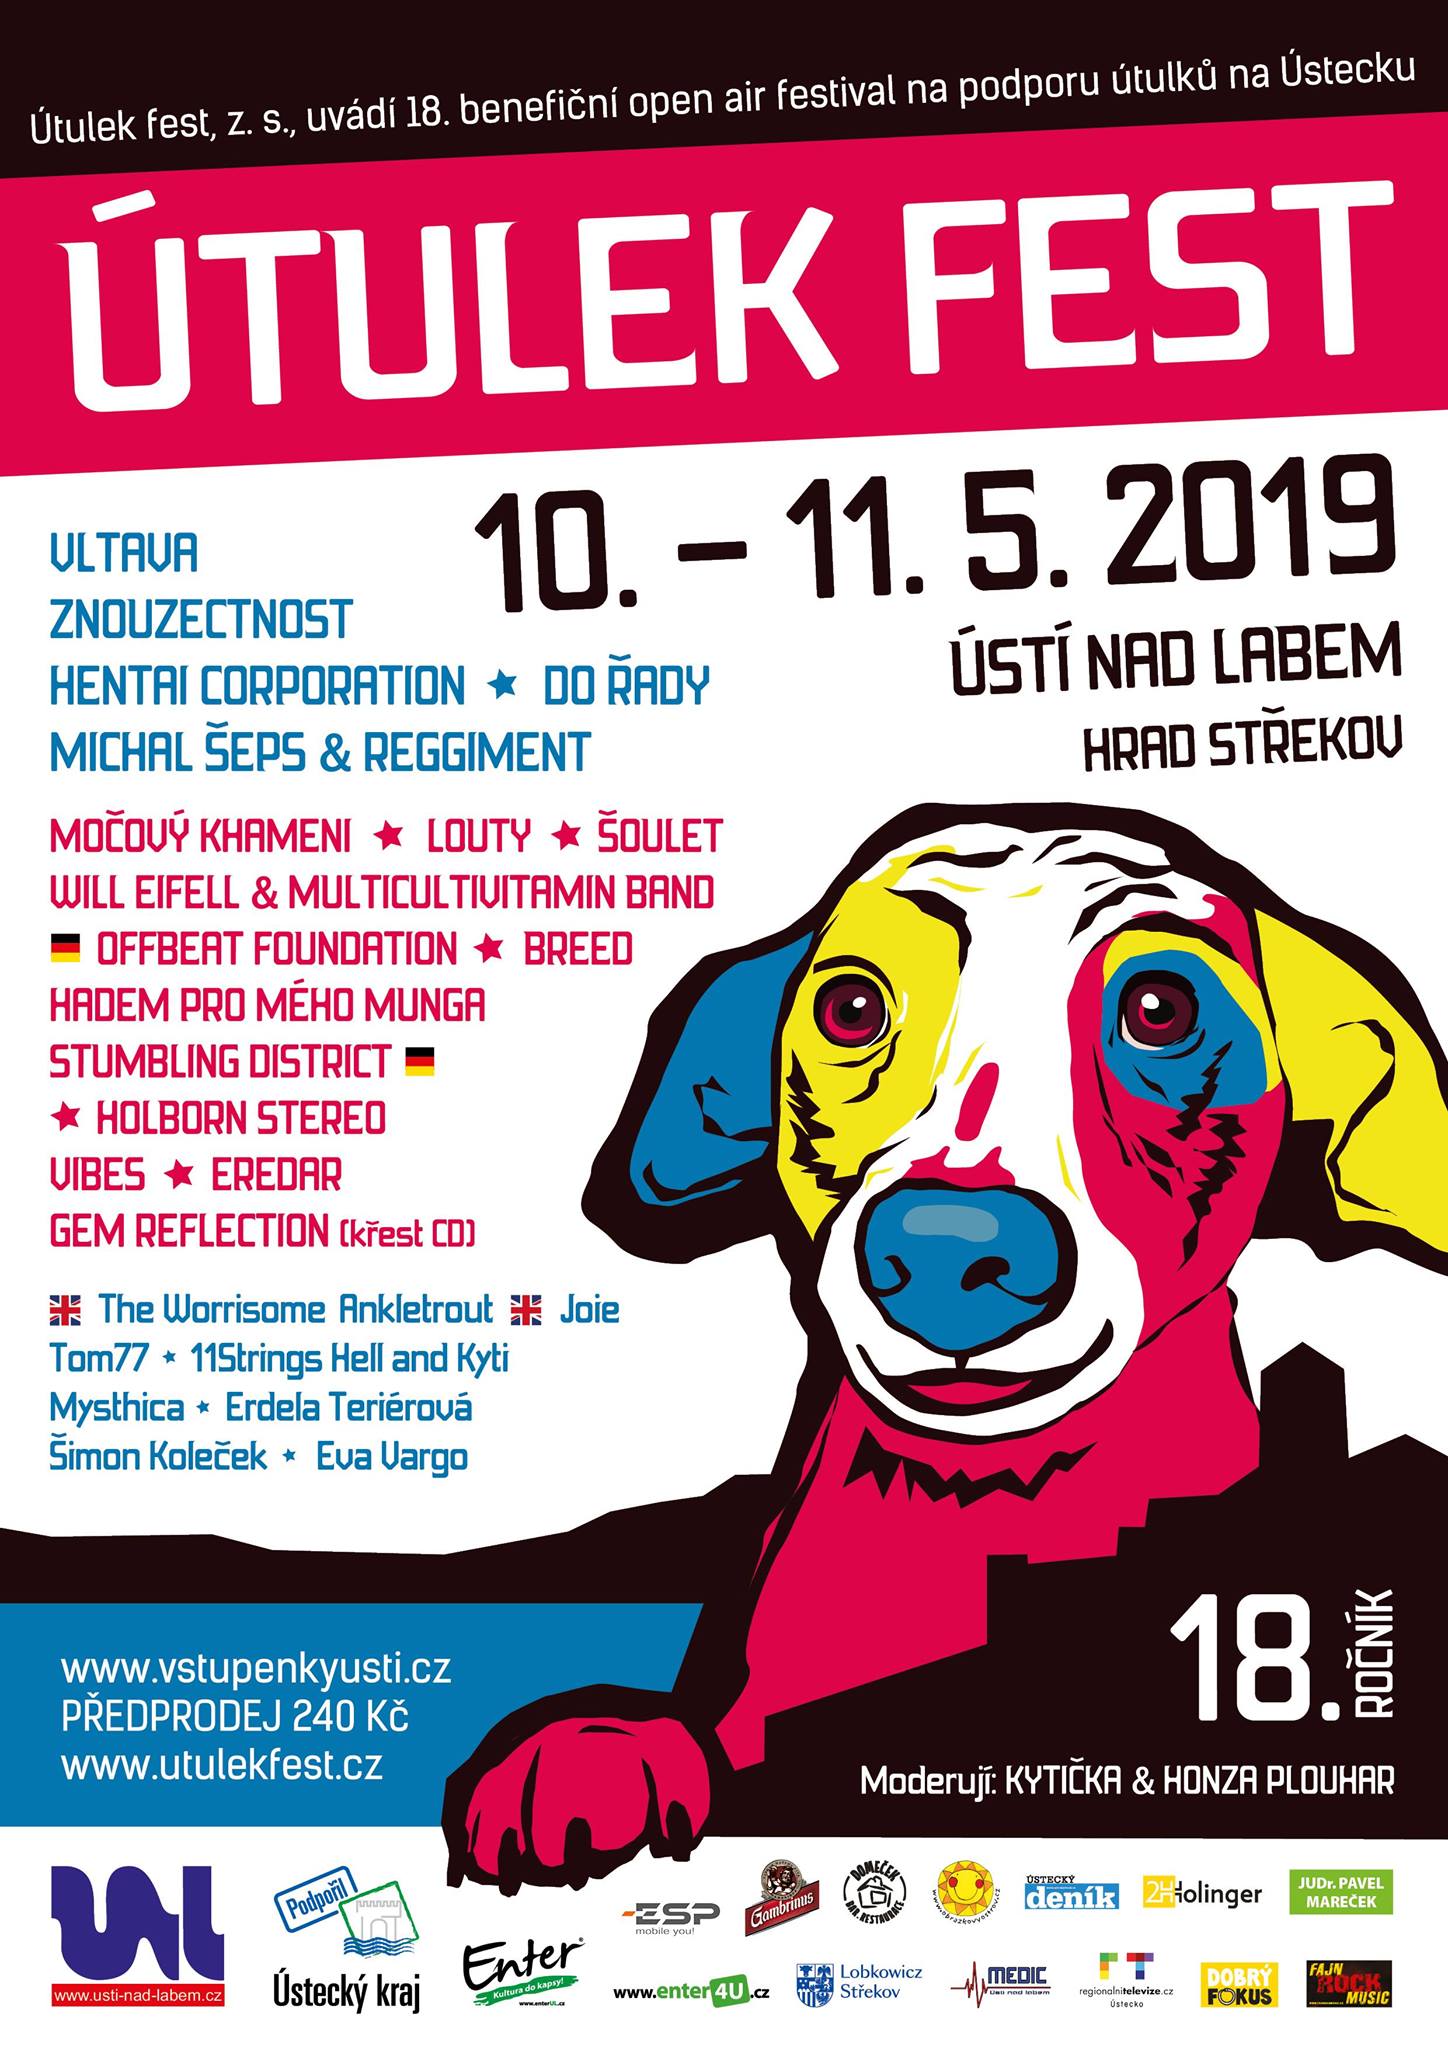 ÚTULEK FEST 2019 poster